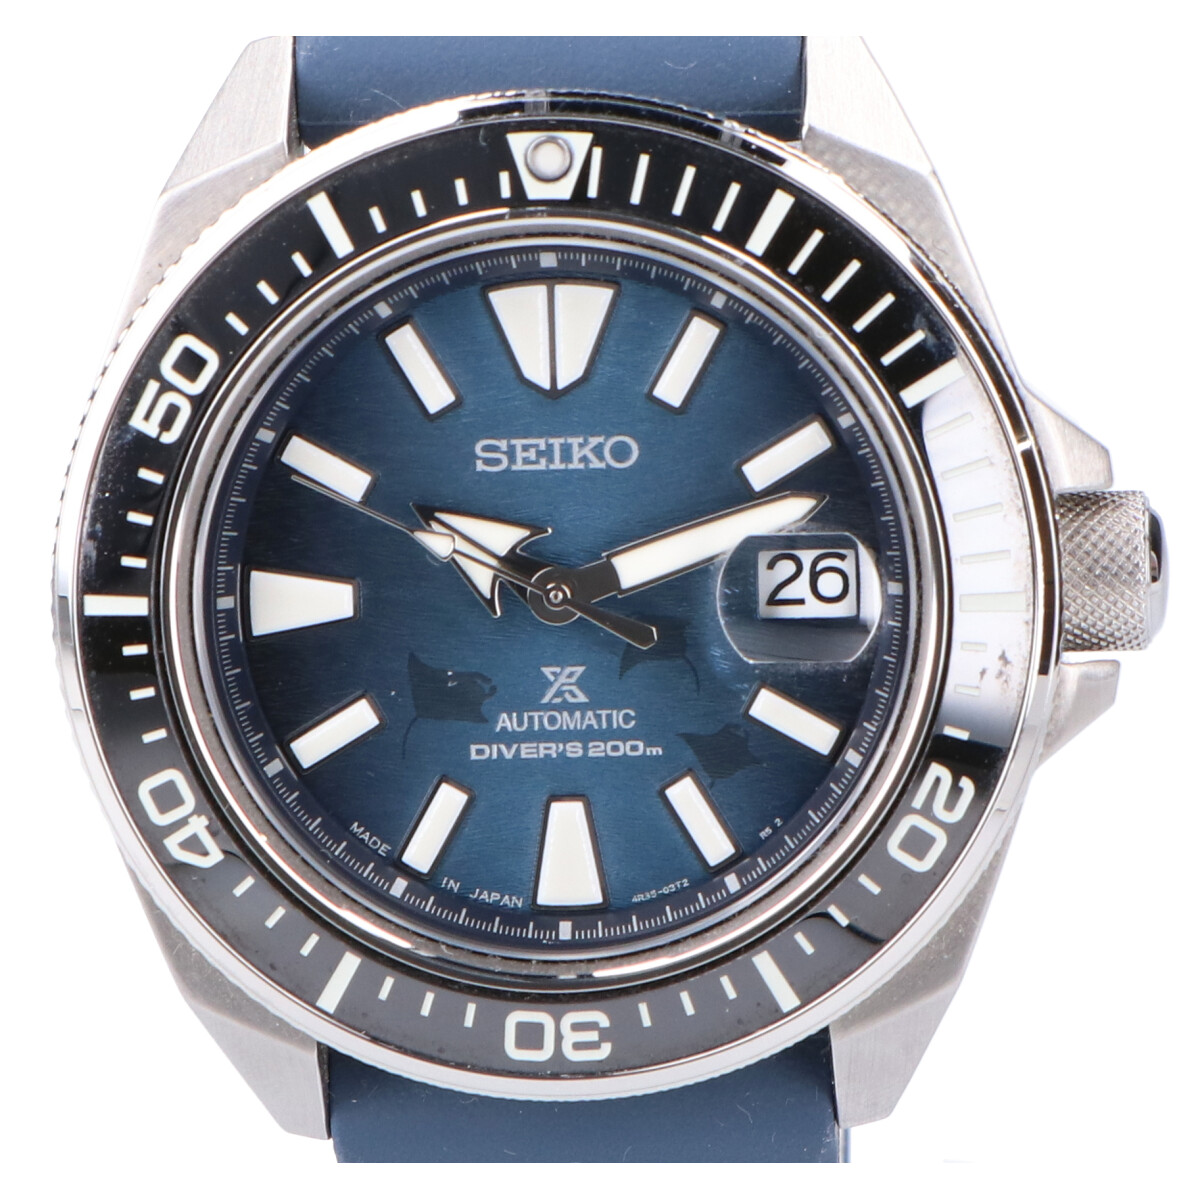 セイコーのSBDY081 Cal.4R35 PROSPEX Save the Ocean Special Edition ダイバースキューバ 手巻き付自動巻き腕時計の買取実績です。